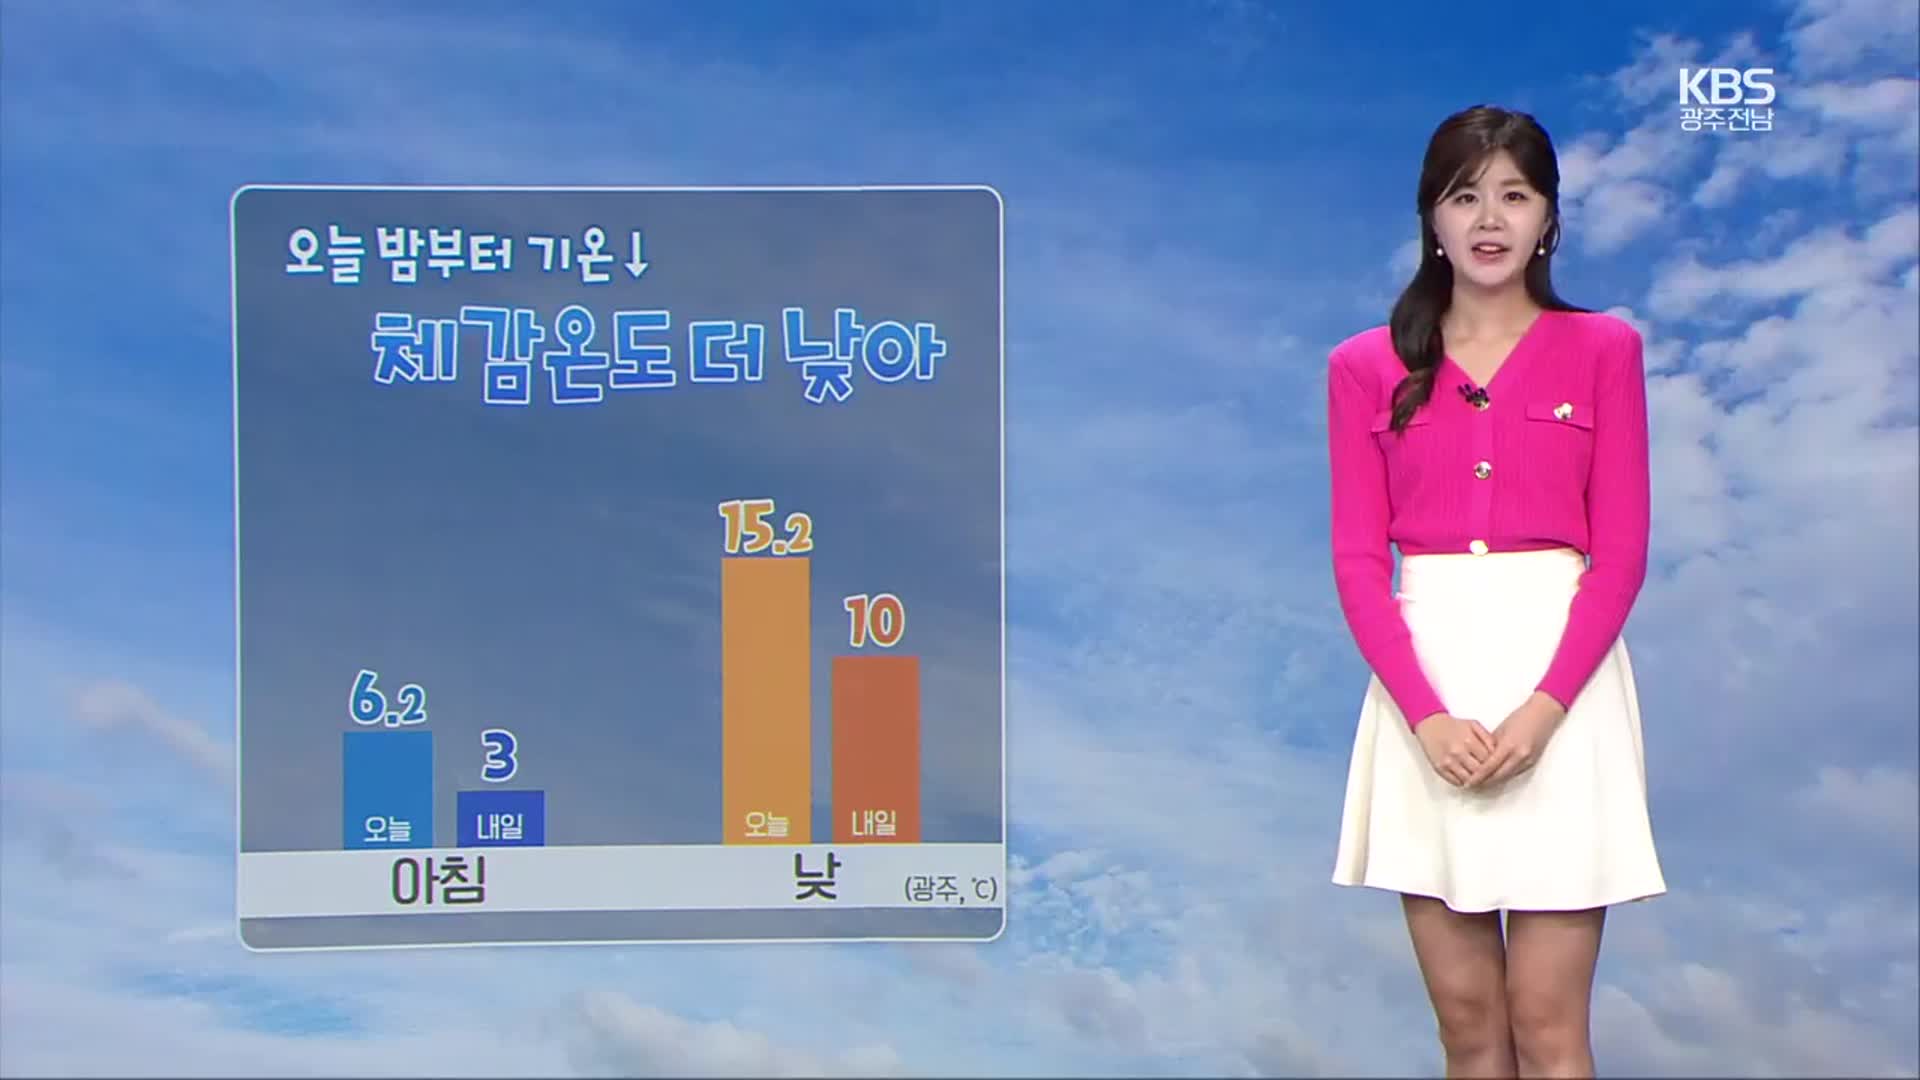 [날씨] 광주·전남 황사 유입, 미세먼지 ‘나쁨’…밤부터 기온 뚝↓